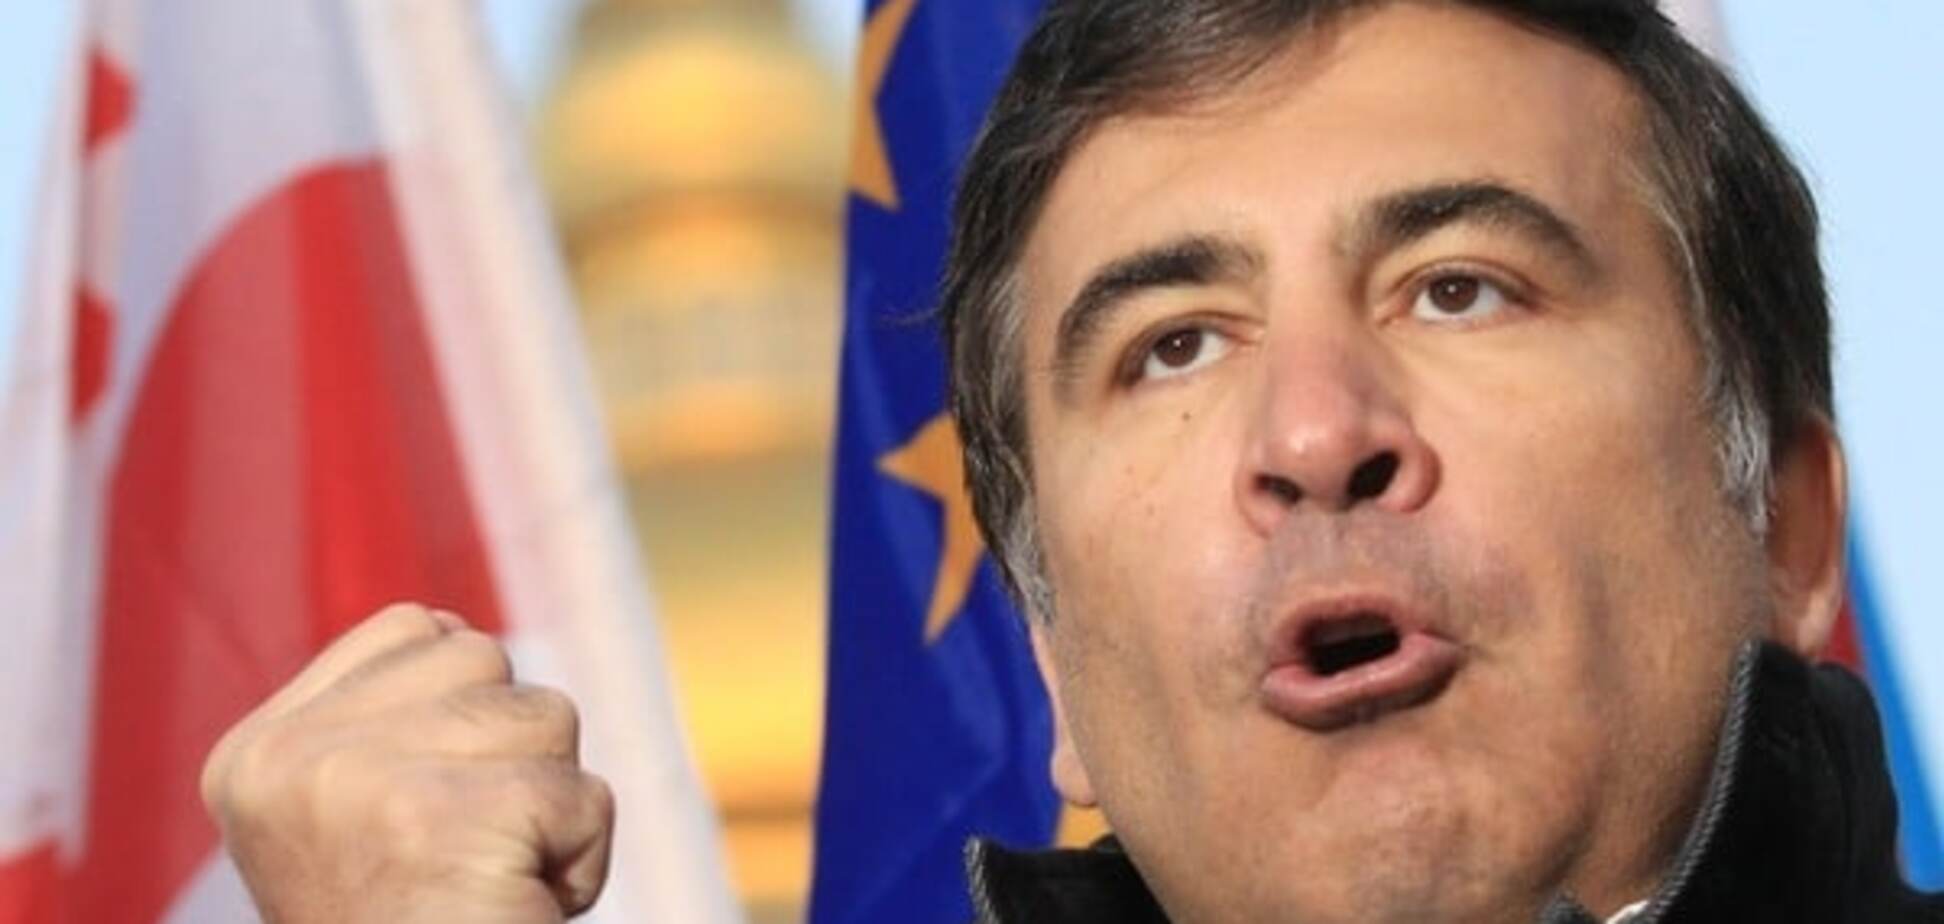 Даешь новые лица! Саакашвили анонсировал смену власти в Украине